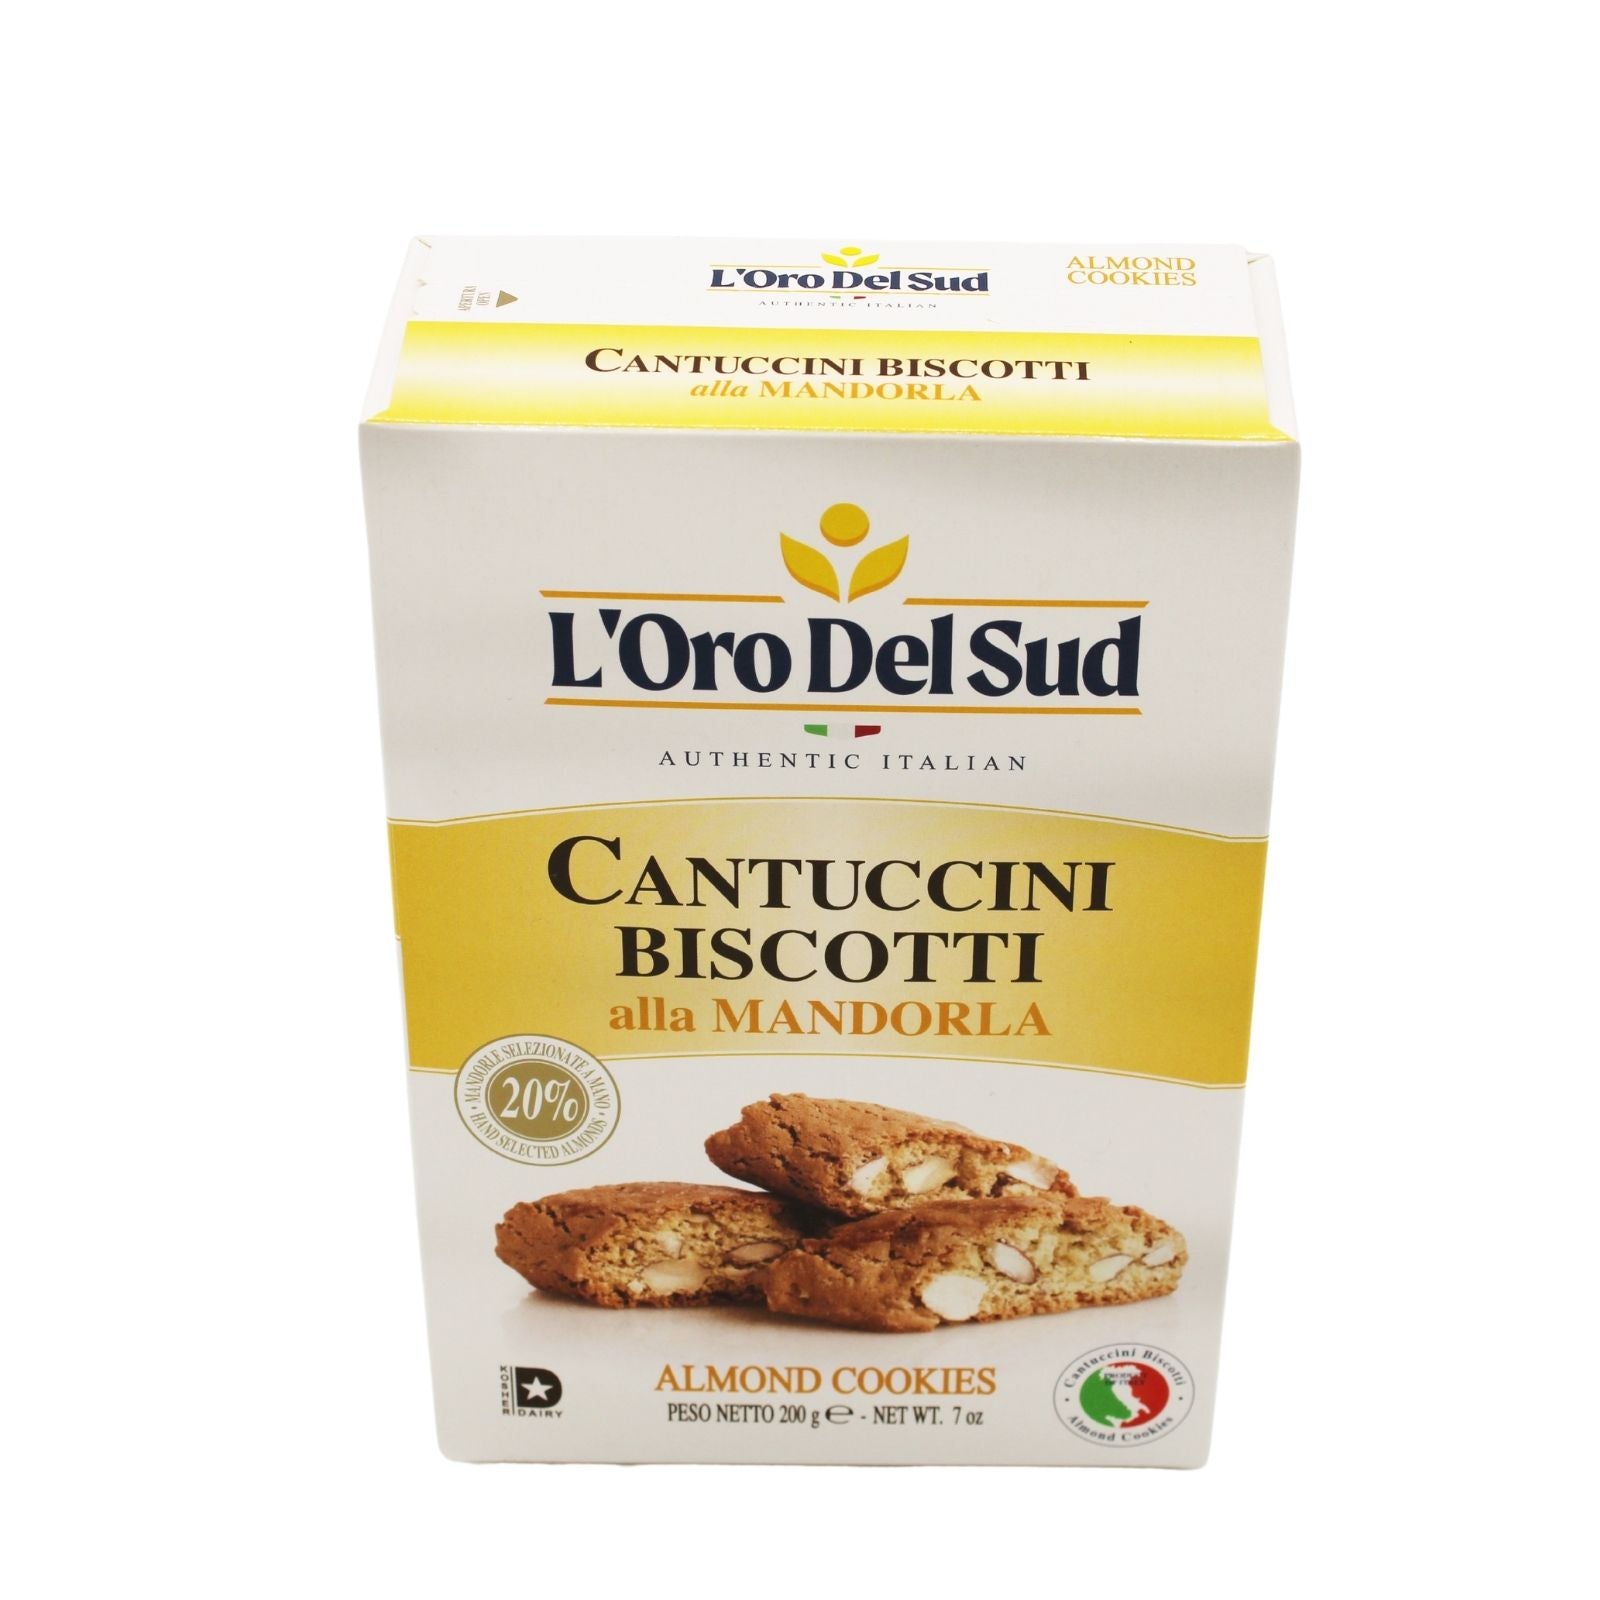 L'Oro Del Sud Cantuccini Biscotti with Almonds